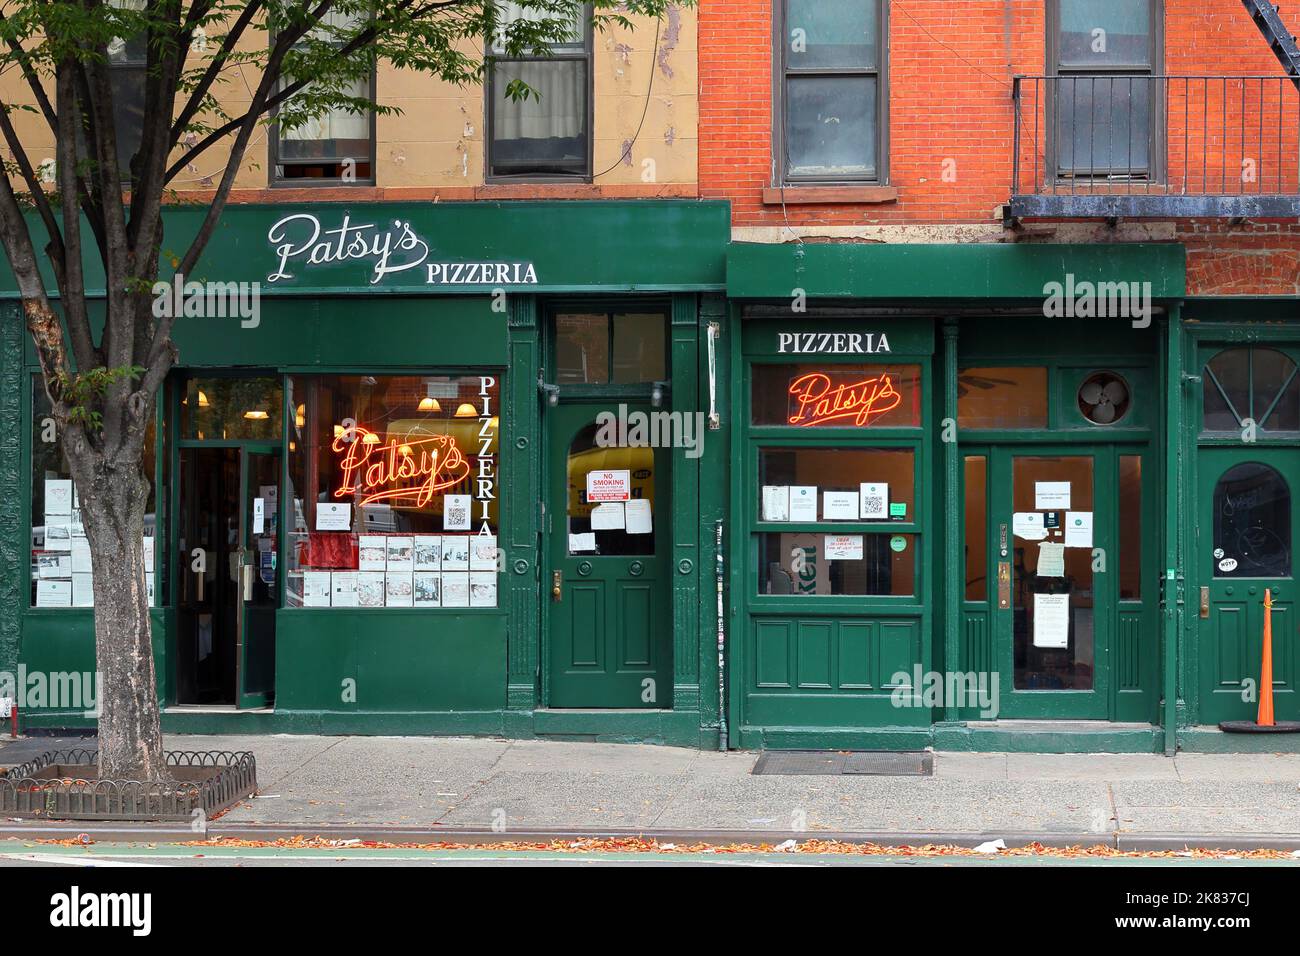 Pattiy's Pizzeria, 2287 1st Ave., New York, New York, New York photo d'un restaurant de pizza au charbon dans le quartier East Harlem de Manhattan. Banque D'Images